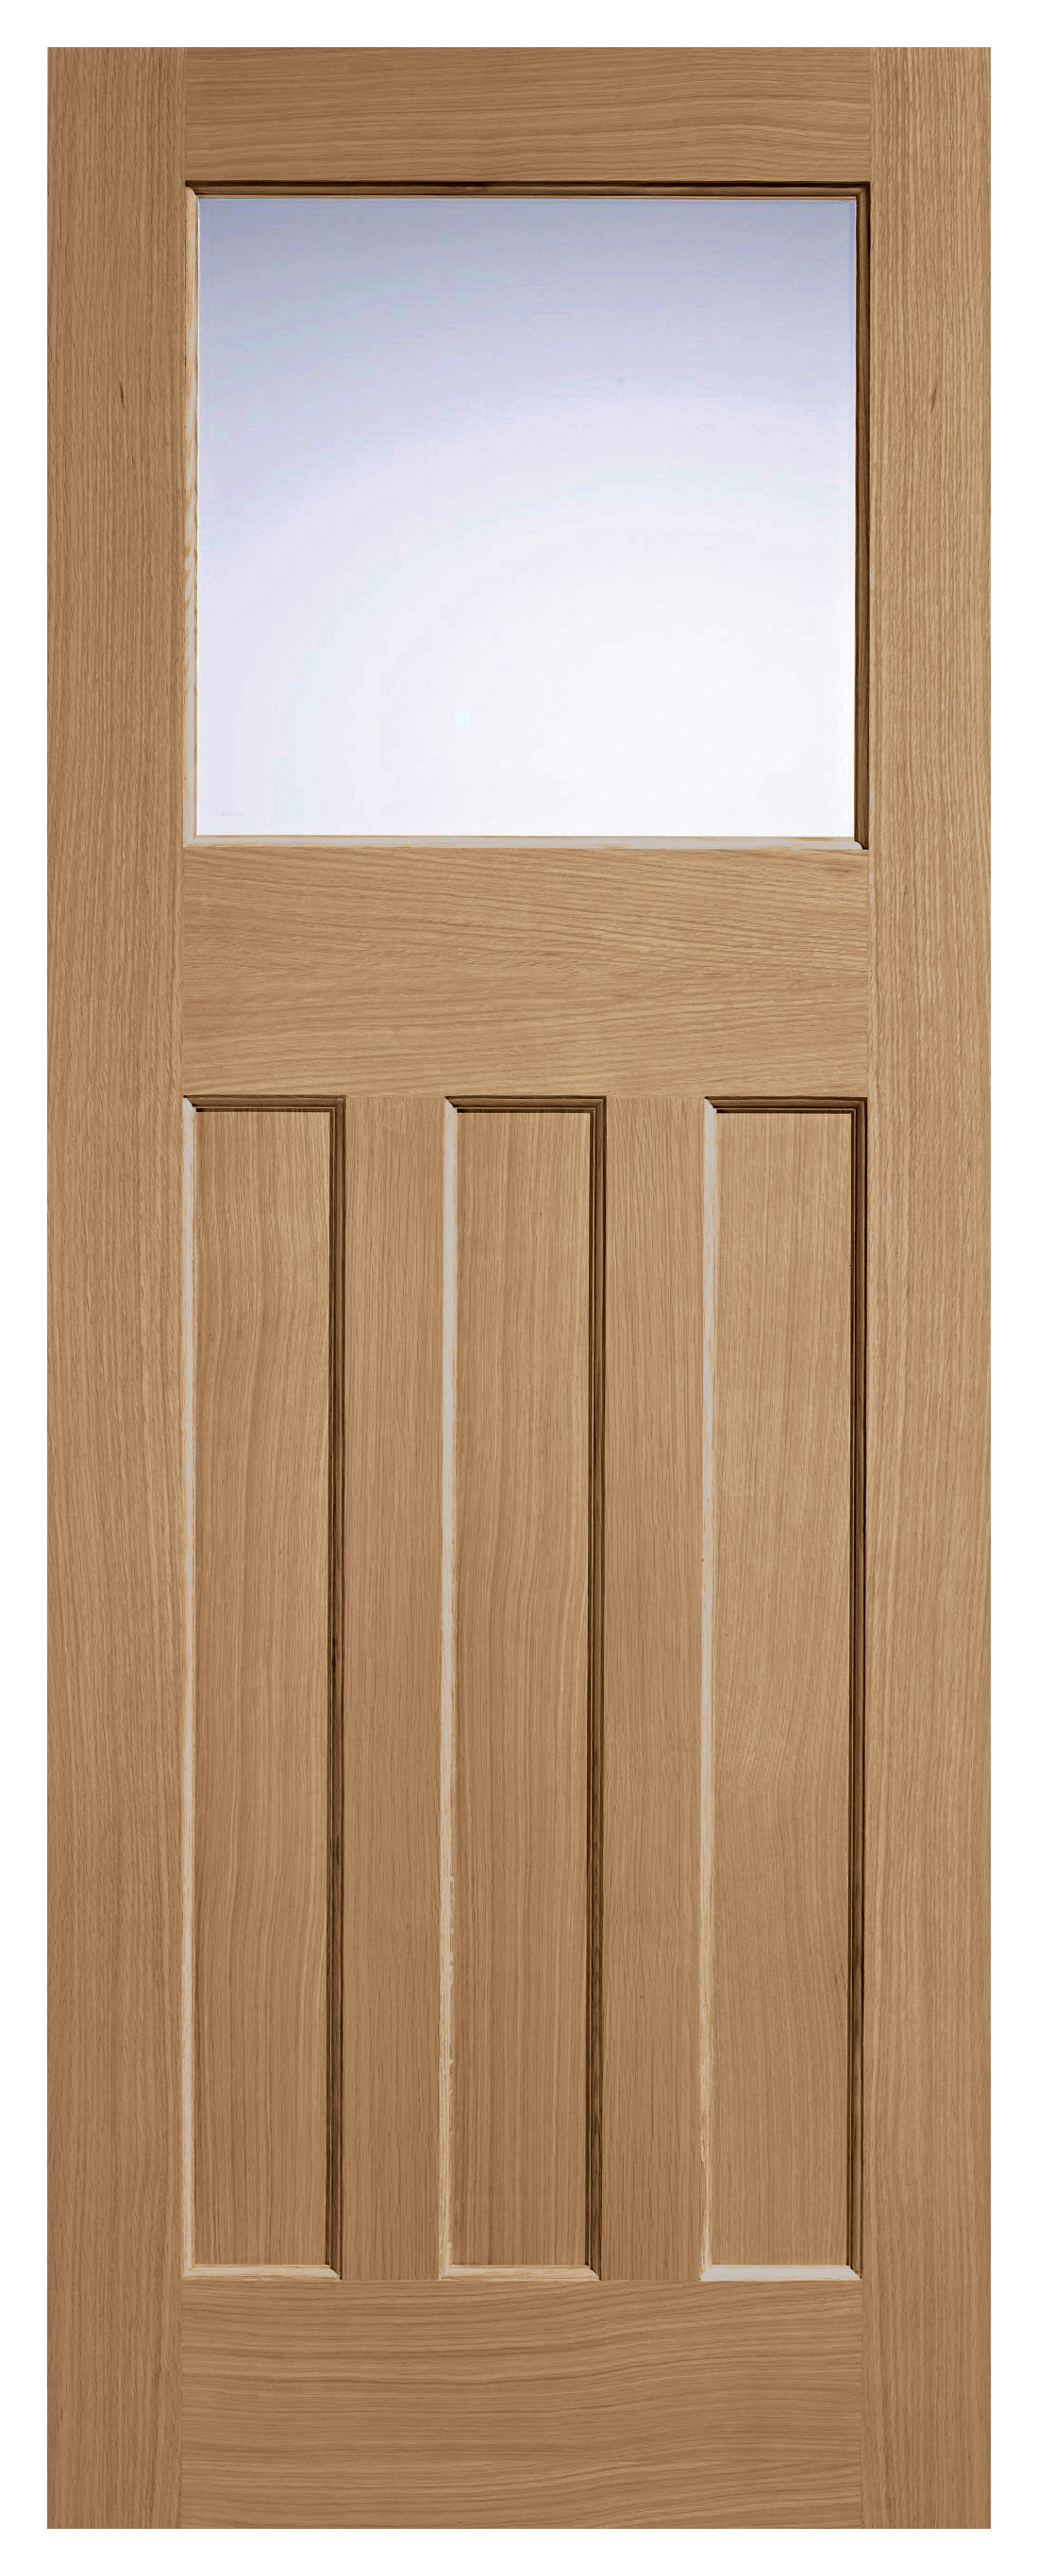 Image of LPD Internal 1 Lite DX 30s Unfinished Oak Solid Core Door - 762 x 1981mm